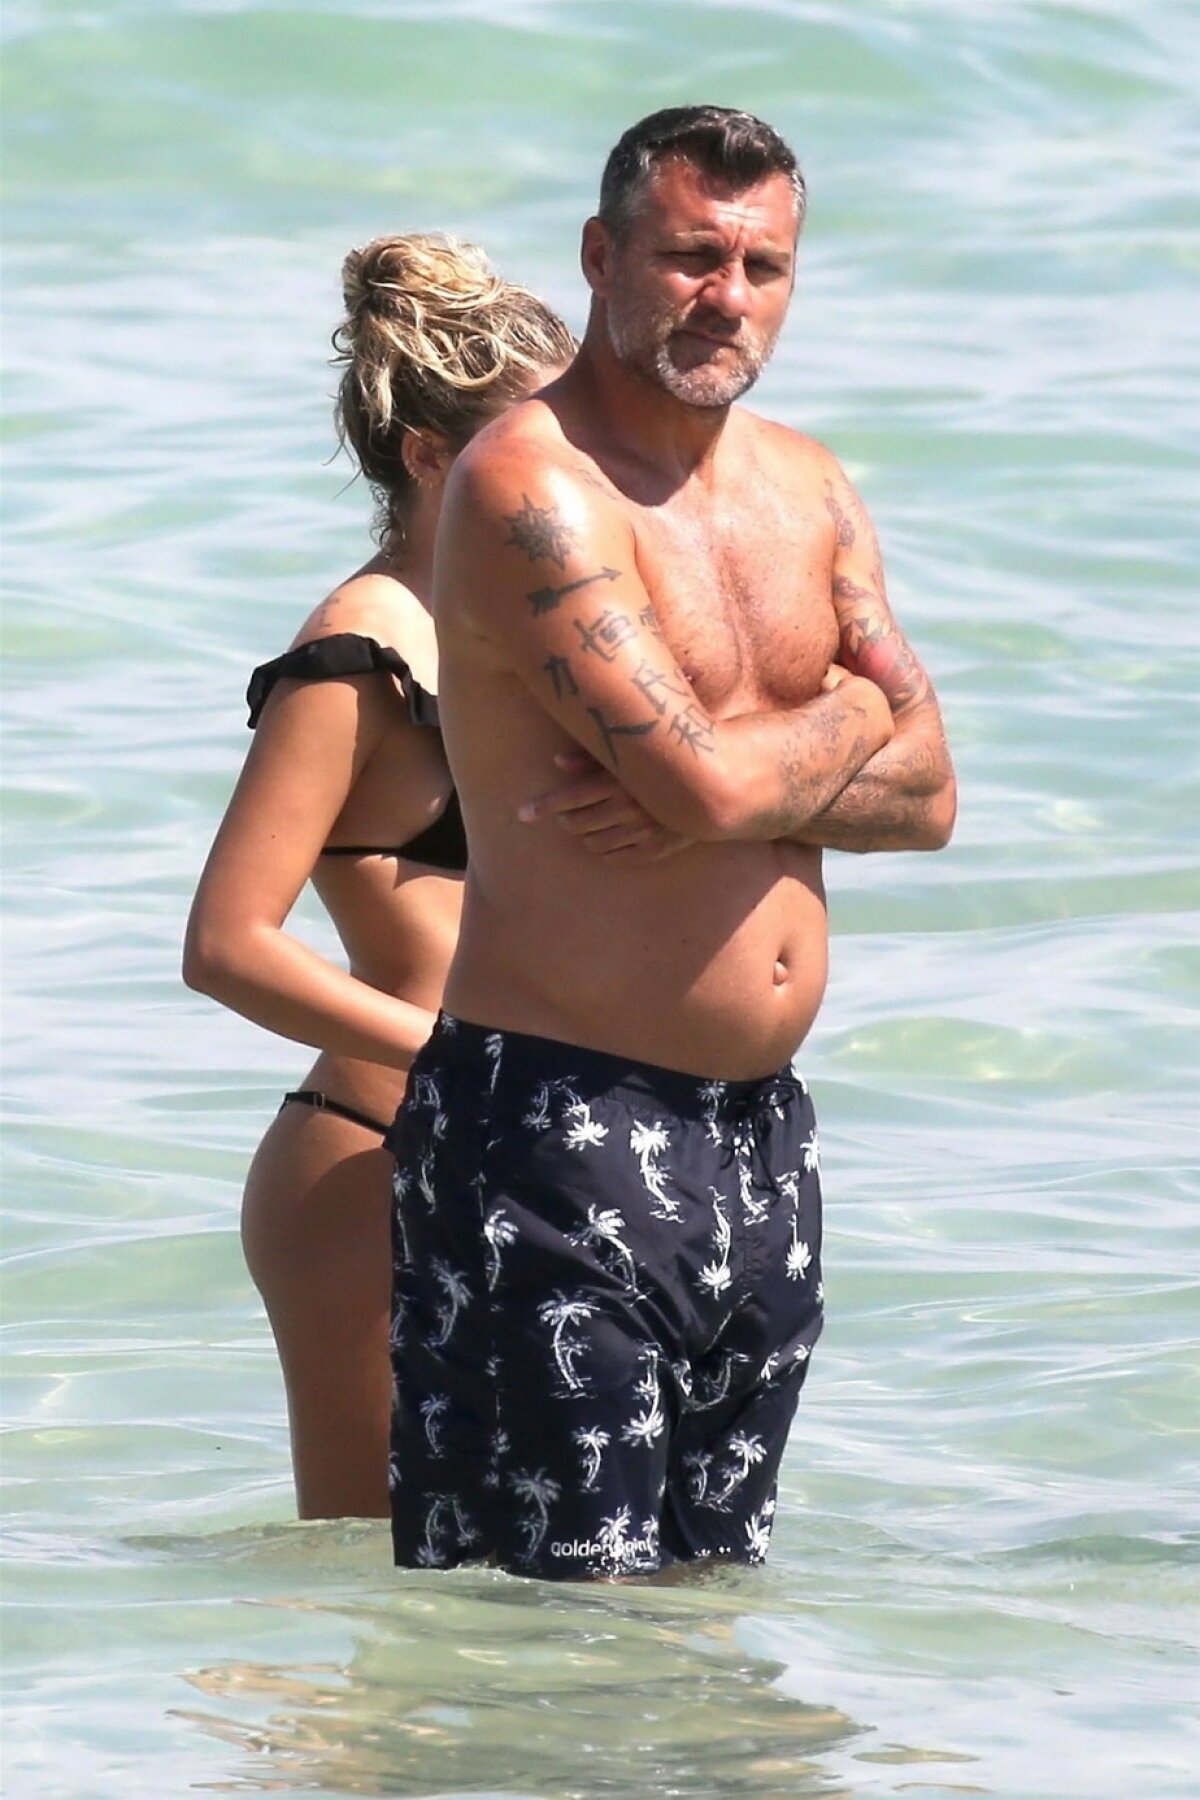 GALERIE FOTO Fotografii incendiare din Miami cu iubita unui fotbalist legendar